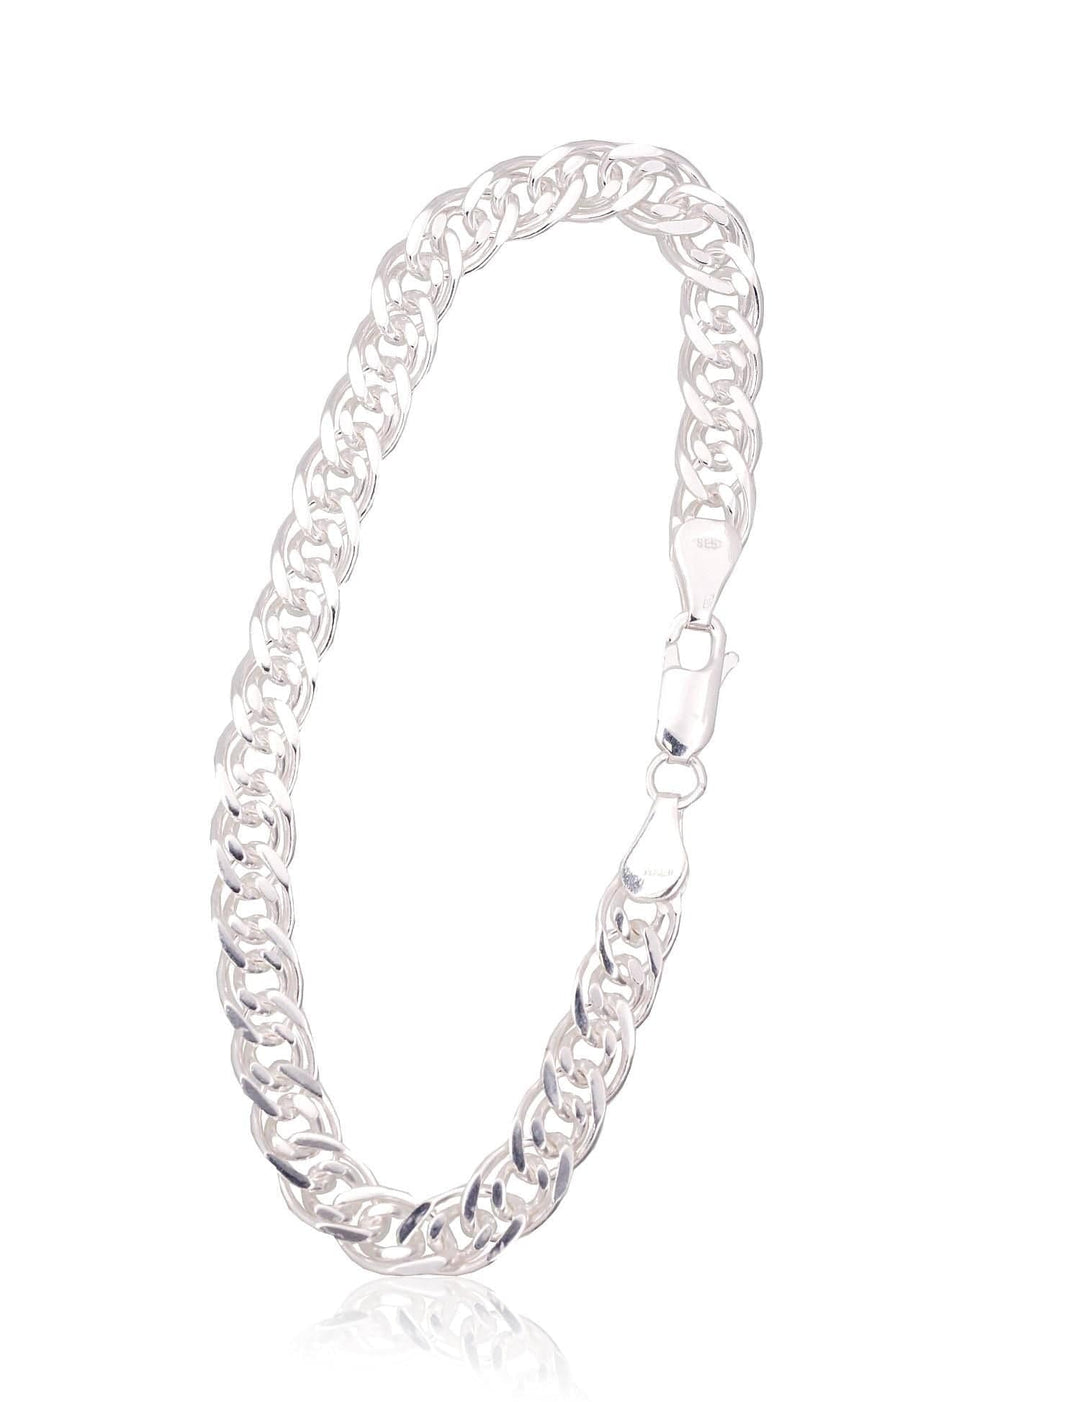 Hõbekett Crandmother 6 mm , kantide teemanttöötlus #2400106-bracelet, Hõbe 925° - Premiumkellad